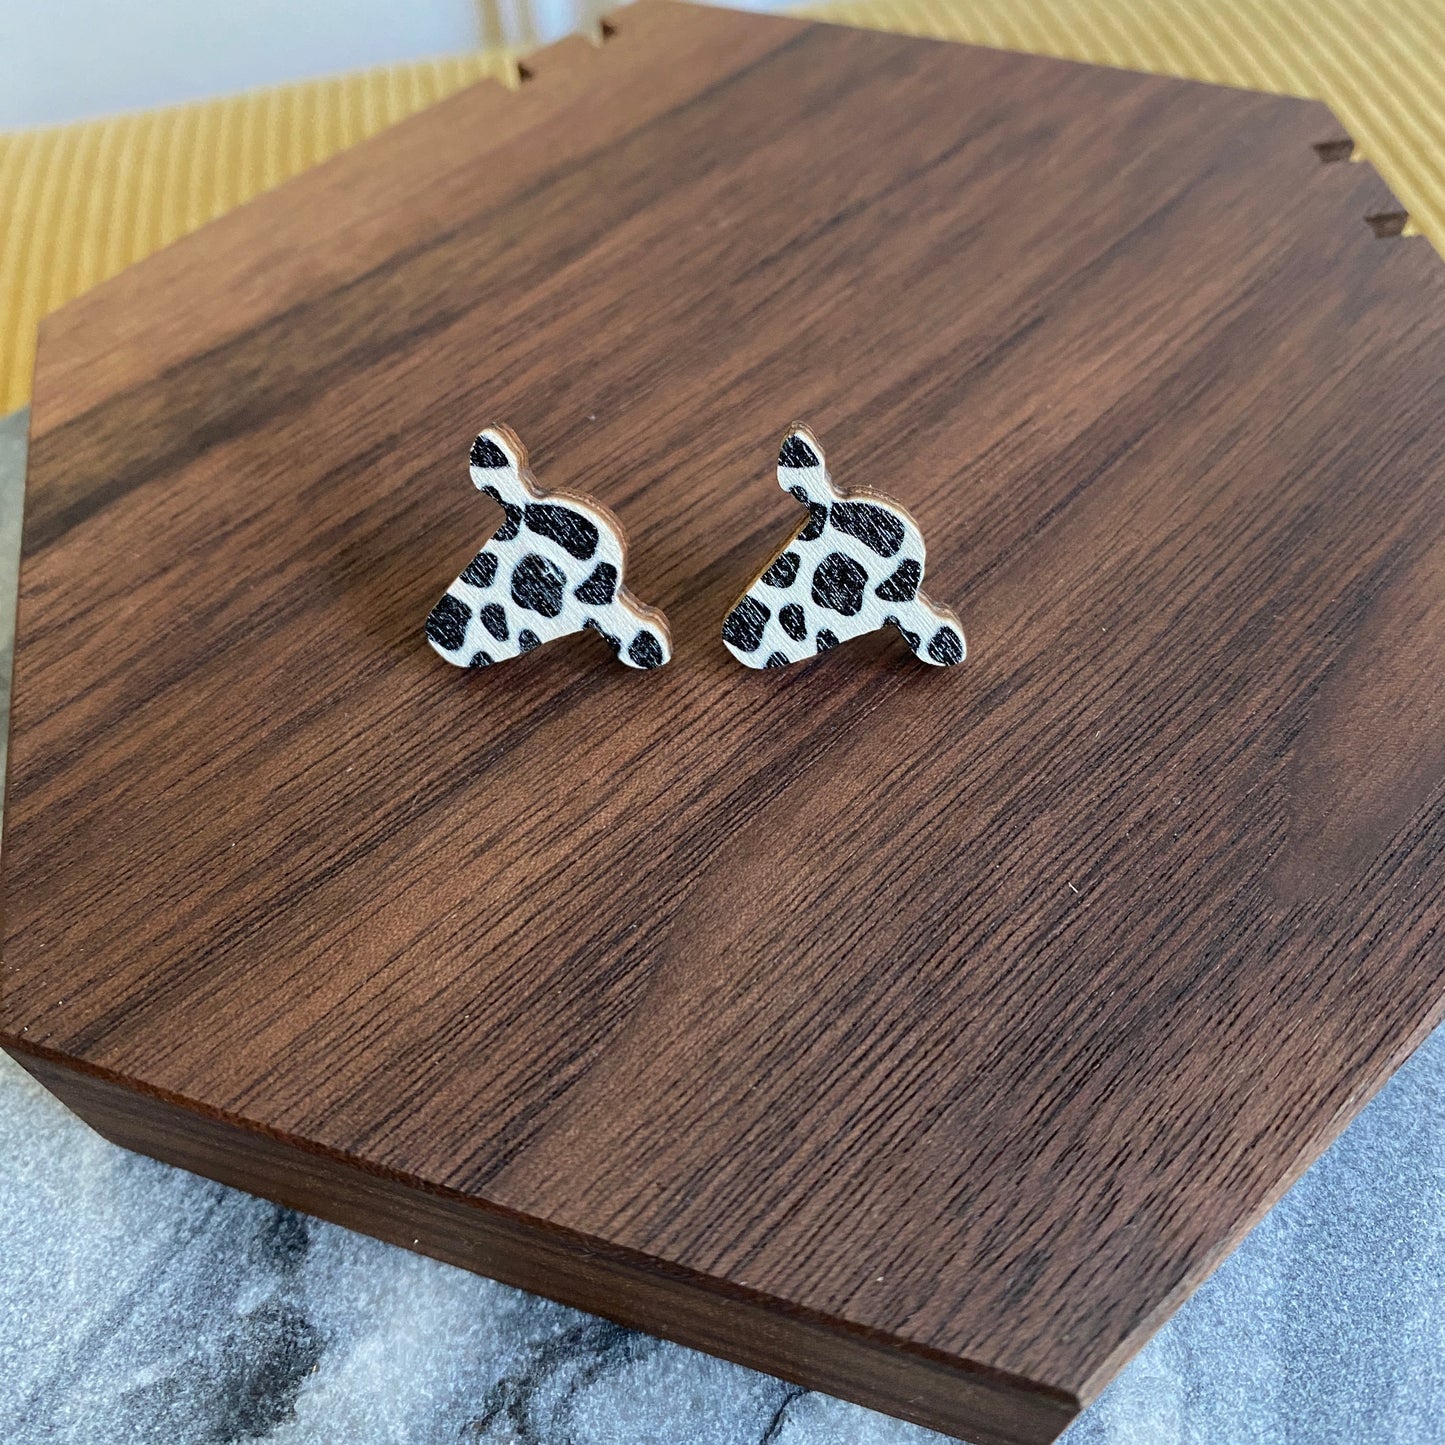 Wooden Stud Earrings - B&W Cow Head